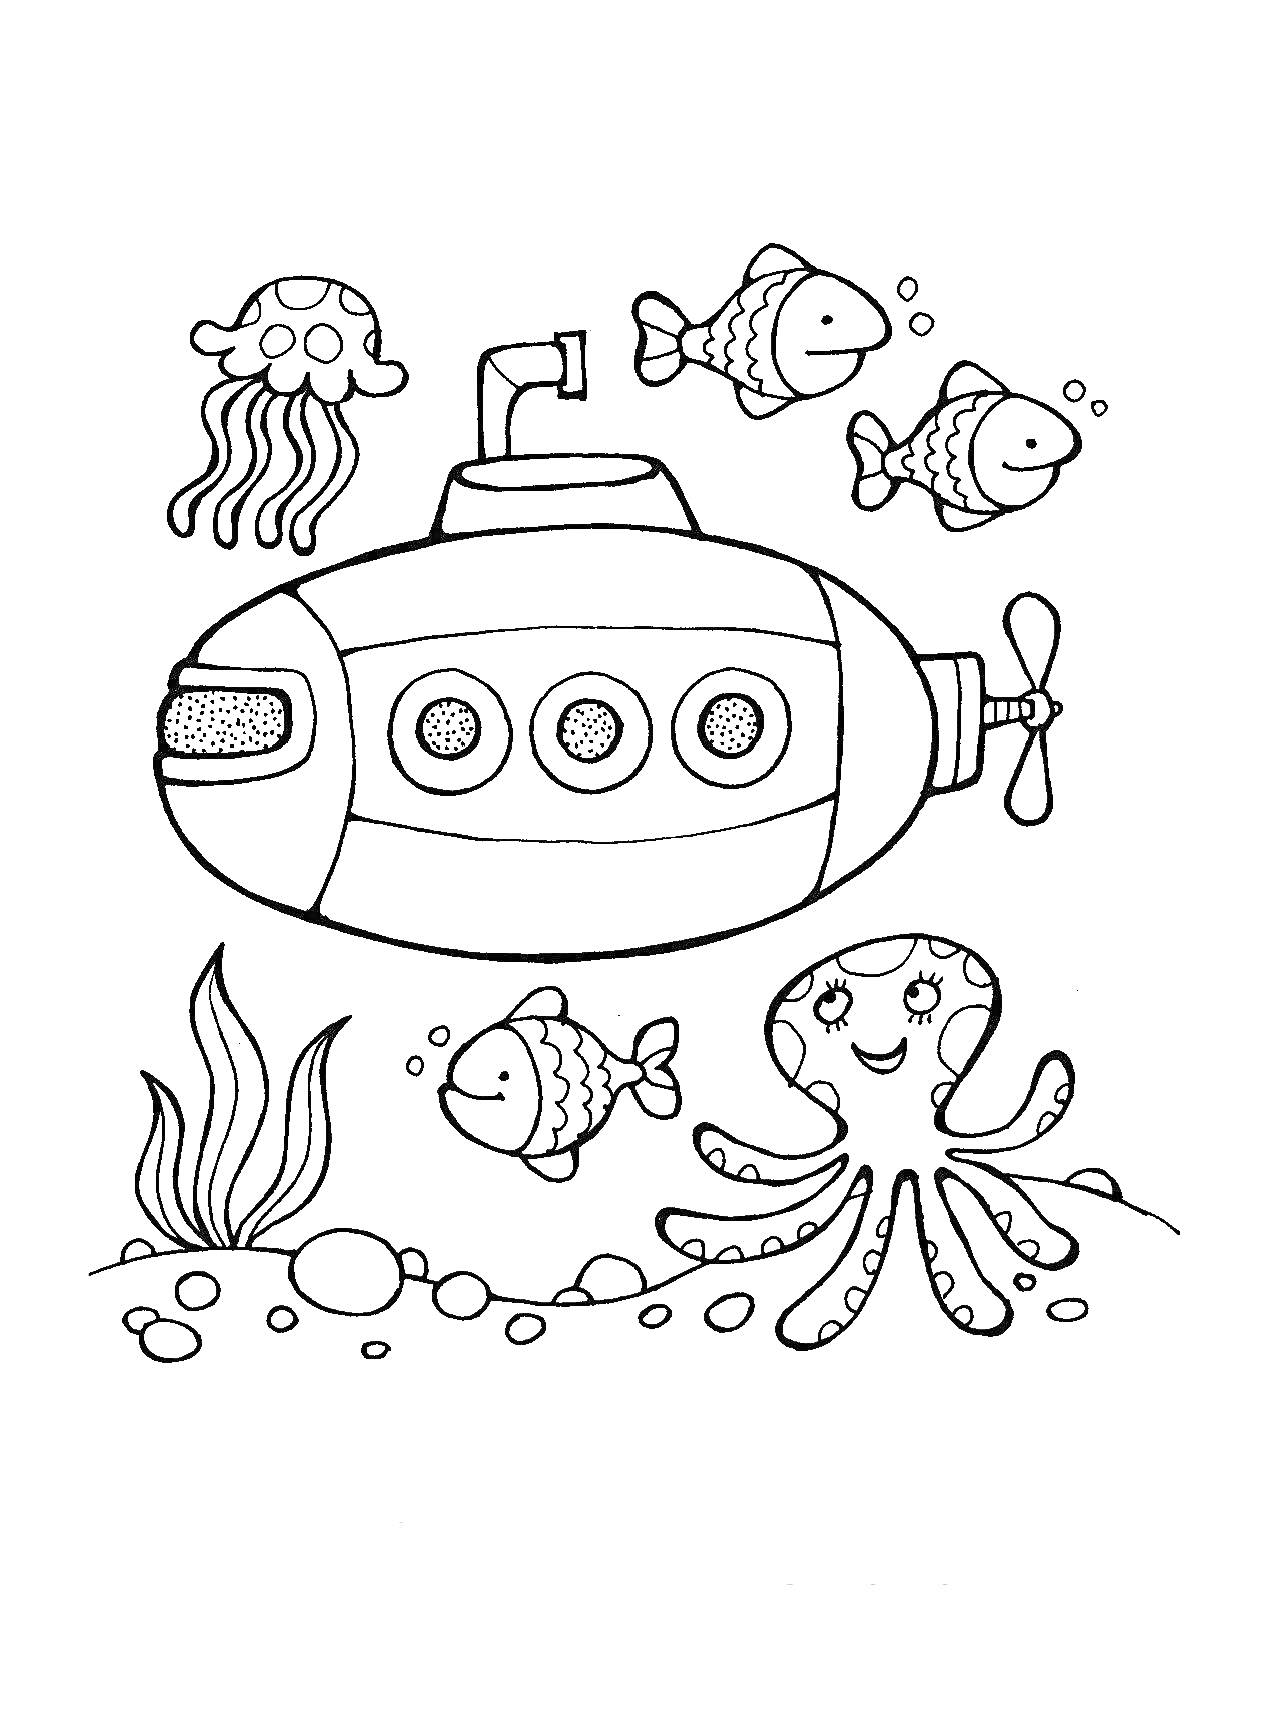 Подводная лодка с тремя круглыми иллюминаторами, четыре рыбы, осьминог, медуза, водоросли и камни на дне